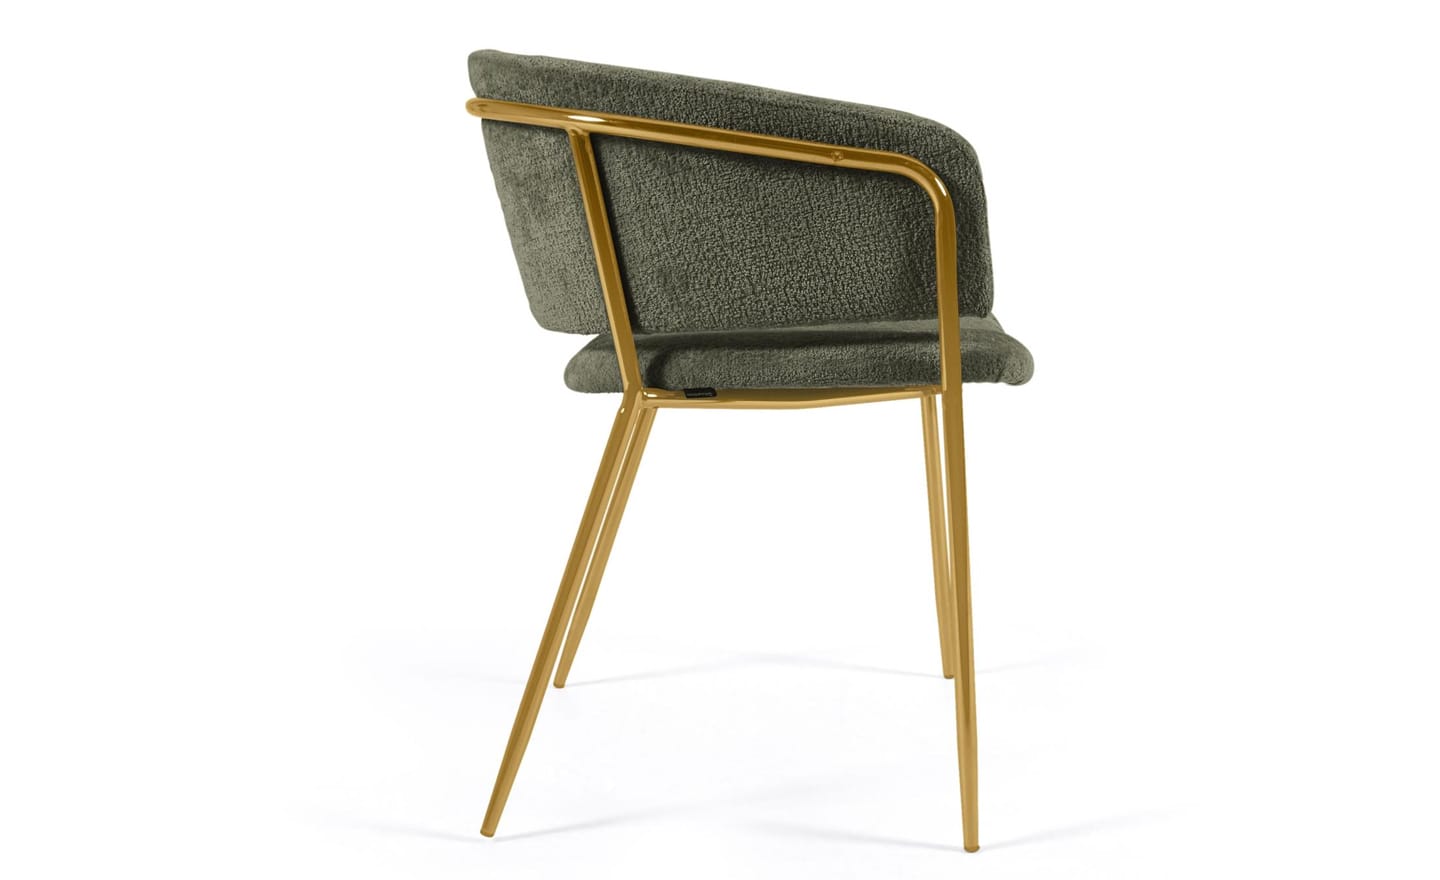 Cadeira Runnie Chenille Verde, estofada em chenille de pelo verde, pernas de metal dourado. Design excepcional de luxo e conforto.